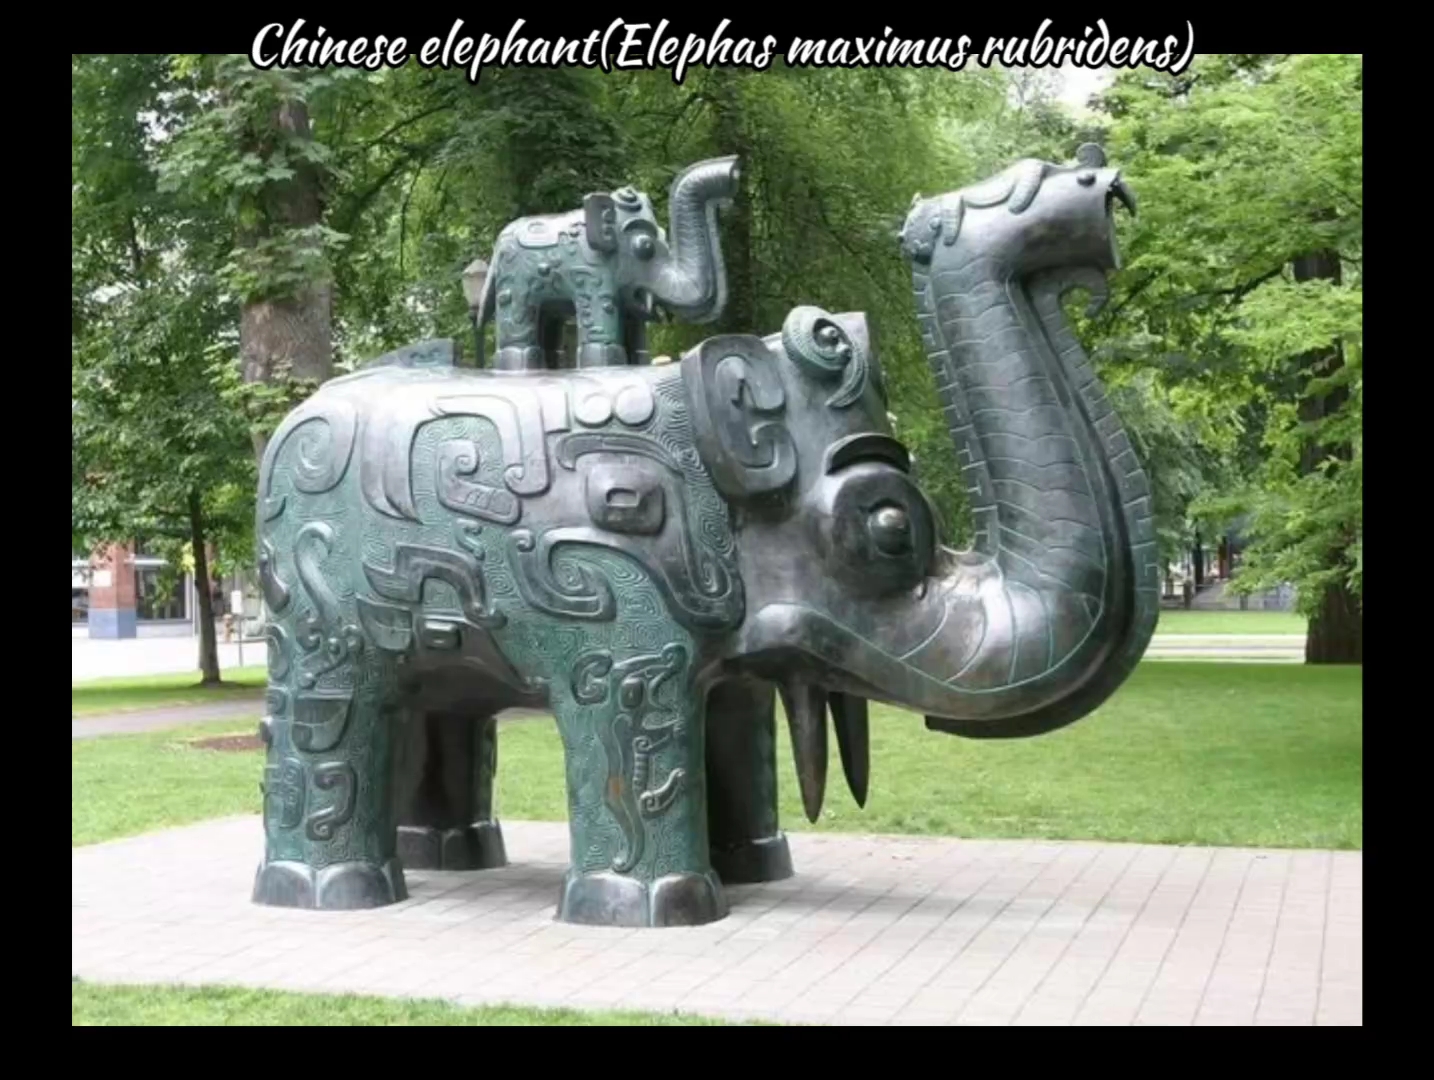 一起看一下亚洲象的中国特有的且已经灭绝的亚种